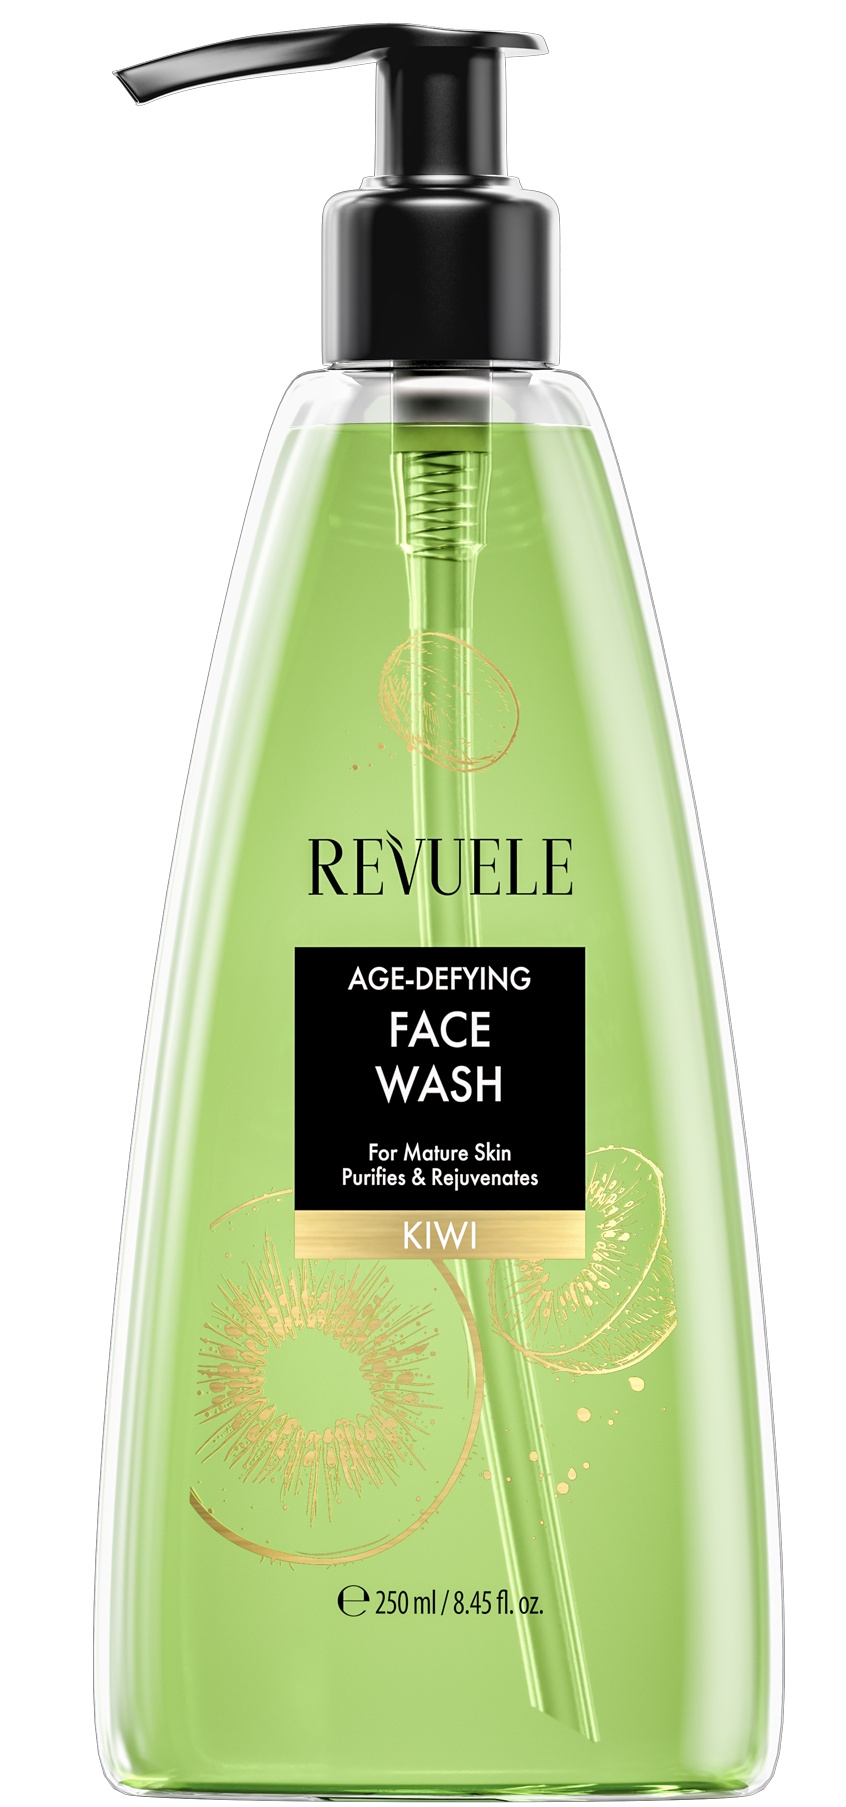 Revuele Age-Defying Face Wash Kiwi